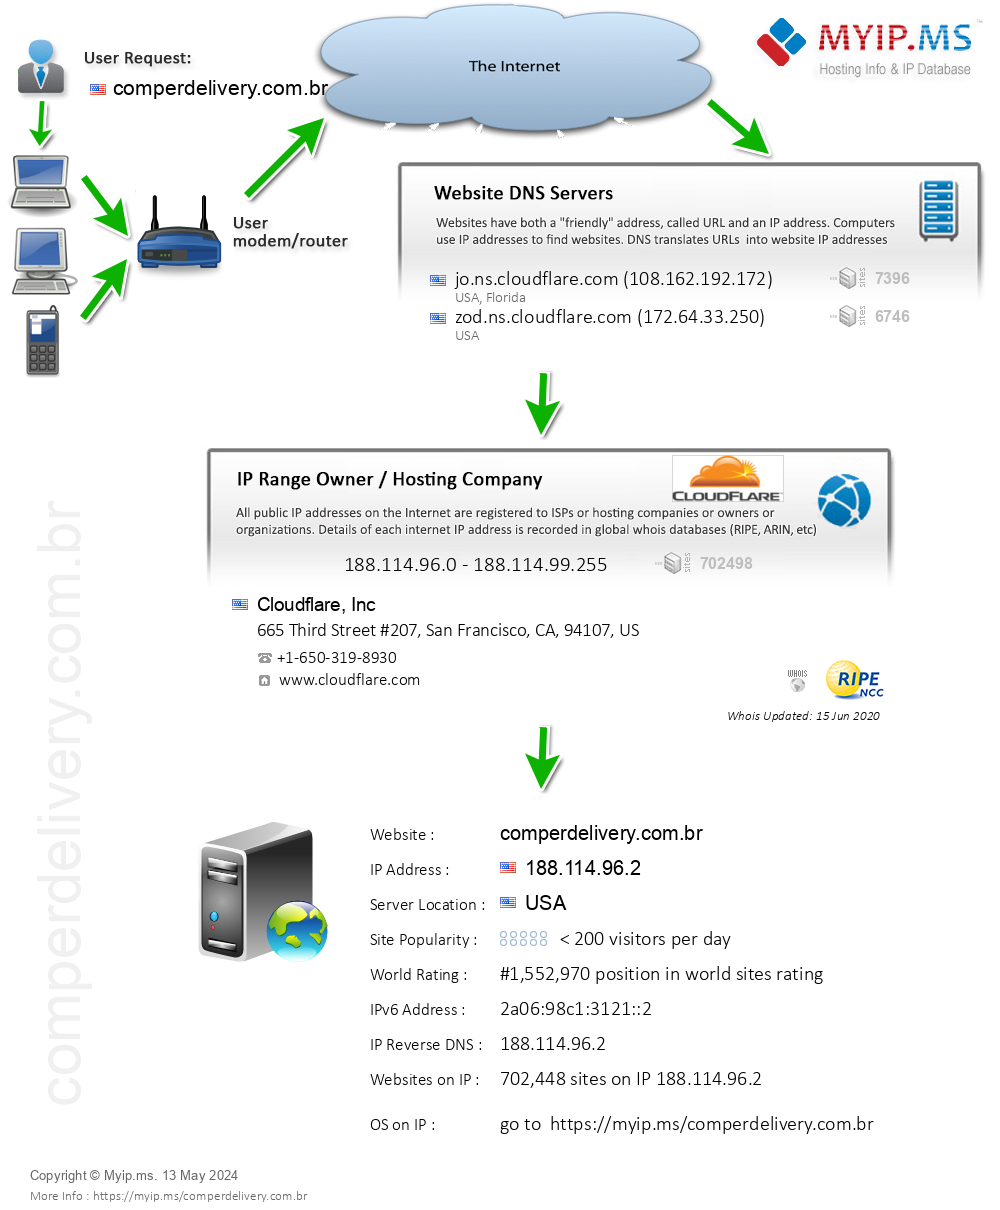 Comperdelivery.com.br - Website Hosting Visual IP Diagram